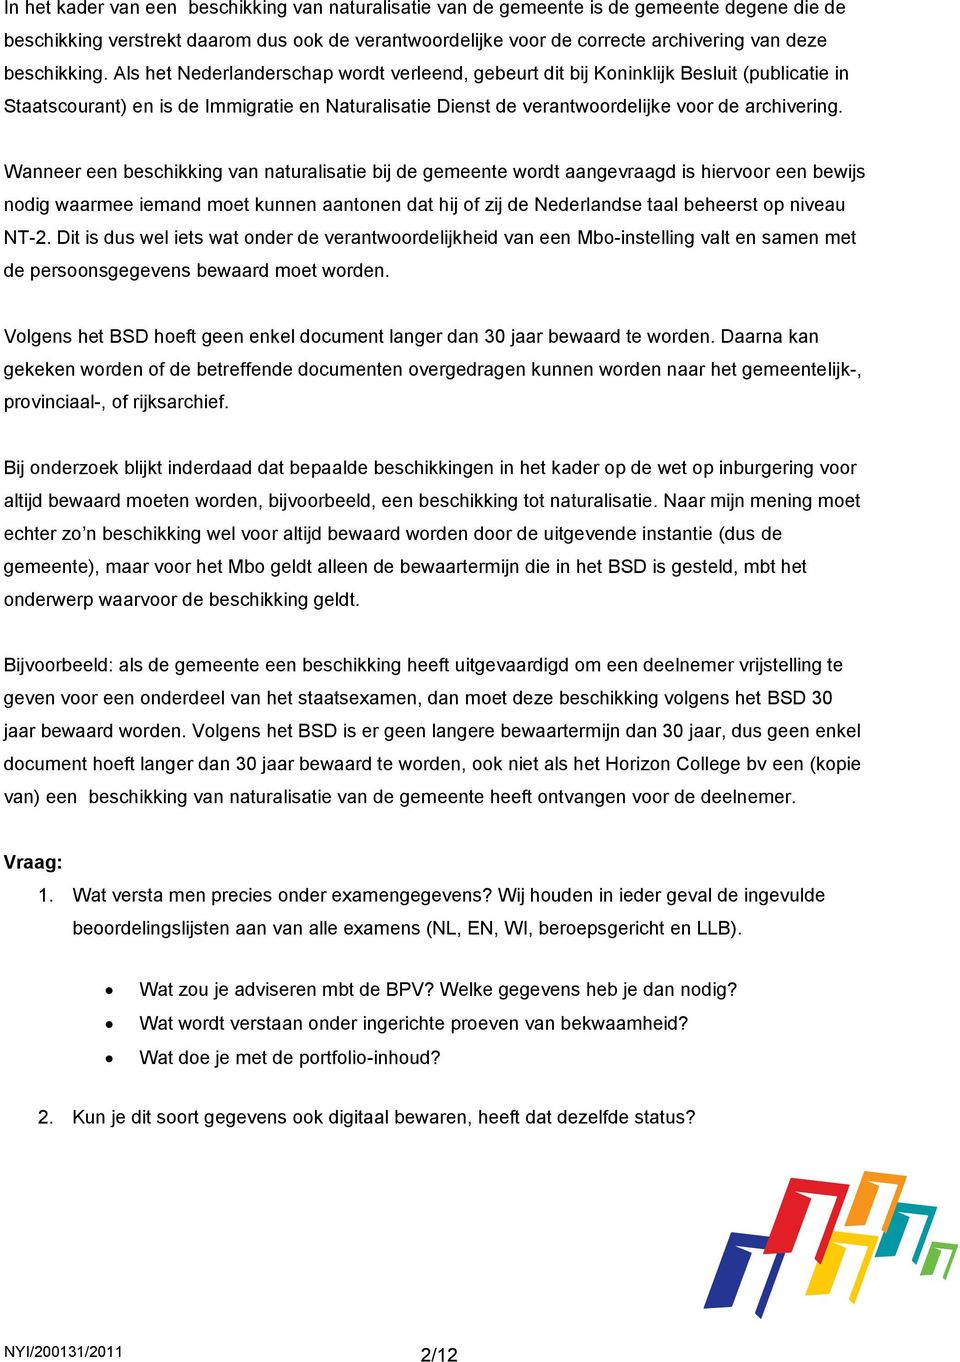 Als het Nederlanderschap wordt verleend, gebeurt dit bij Koninklijk Besluit (publicatie in Staatscourant) en is de Immigratie en Naturalisatie Dienst de verantwoordelijke voor de archivering.